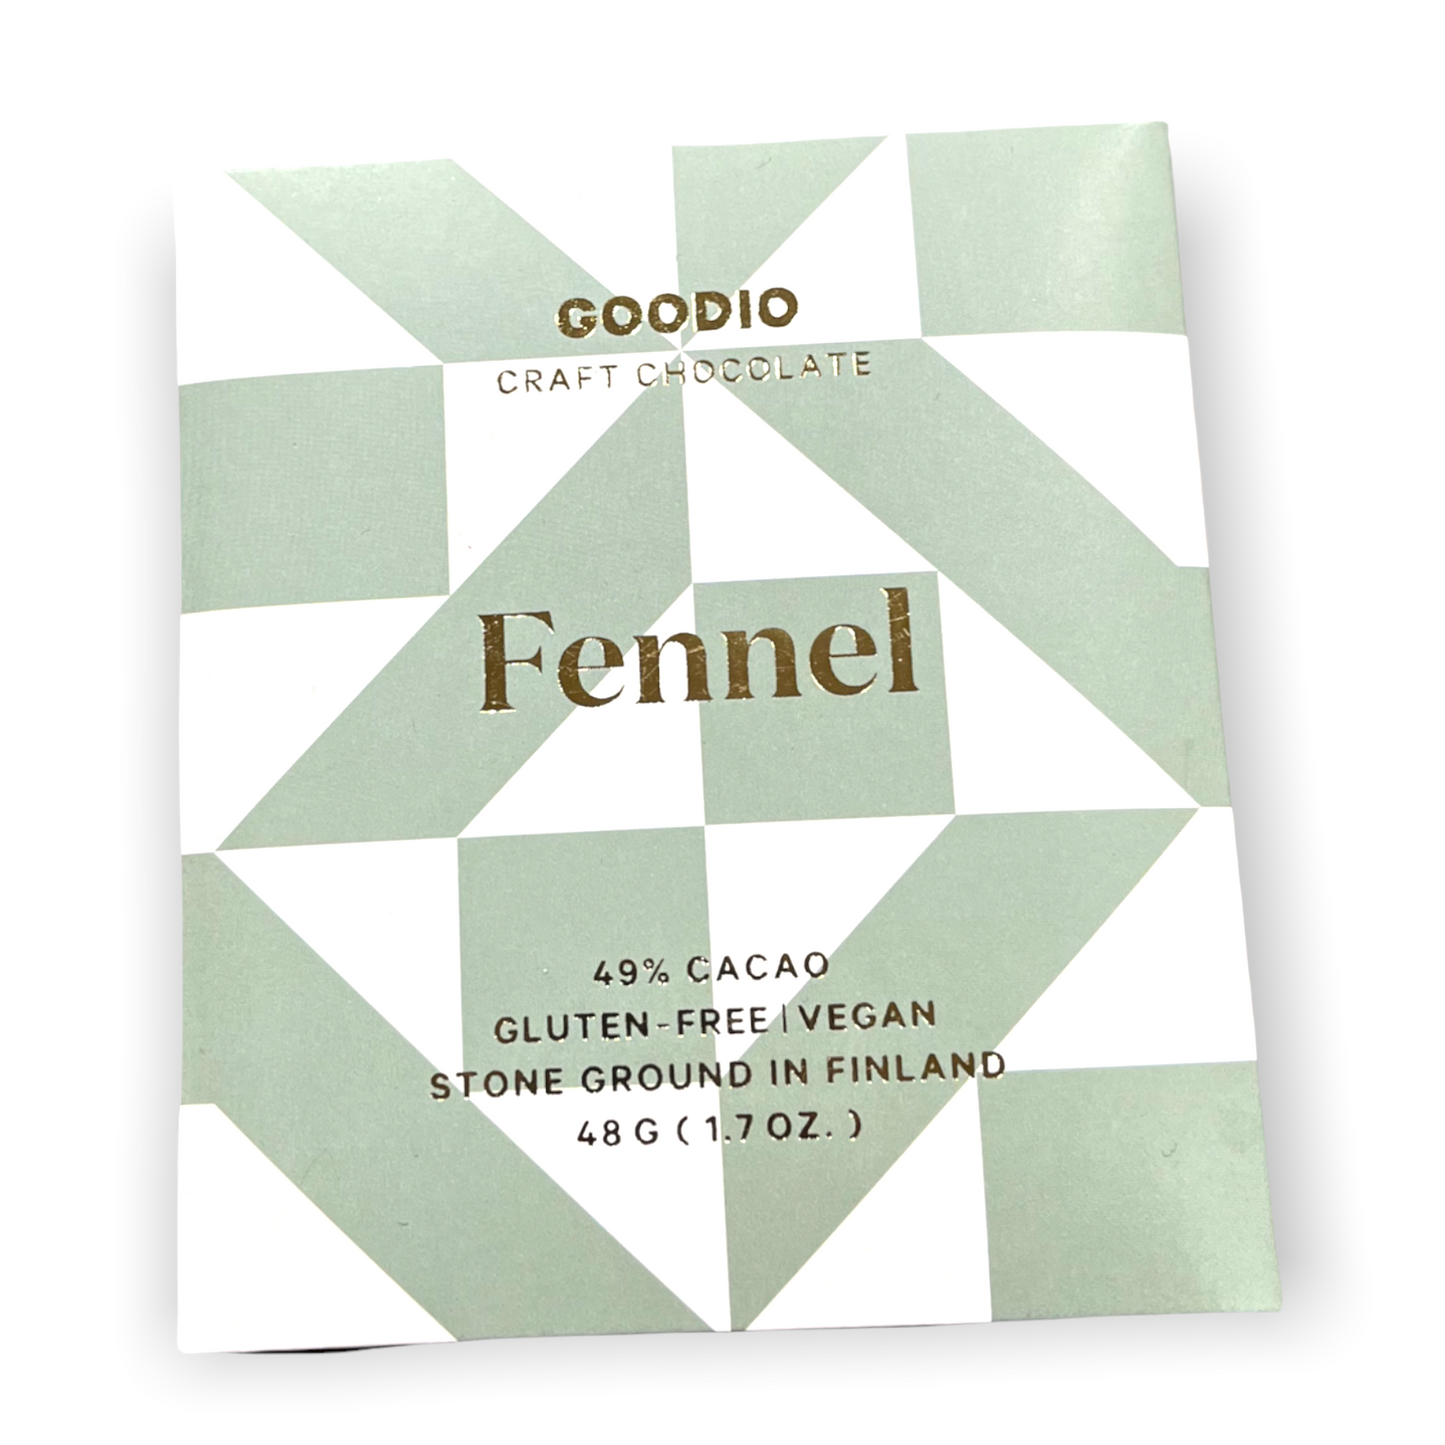 Goodio 49% VEGAN fennel CHOCOLATE BAR